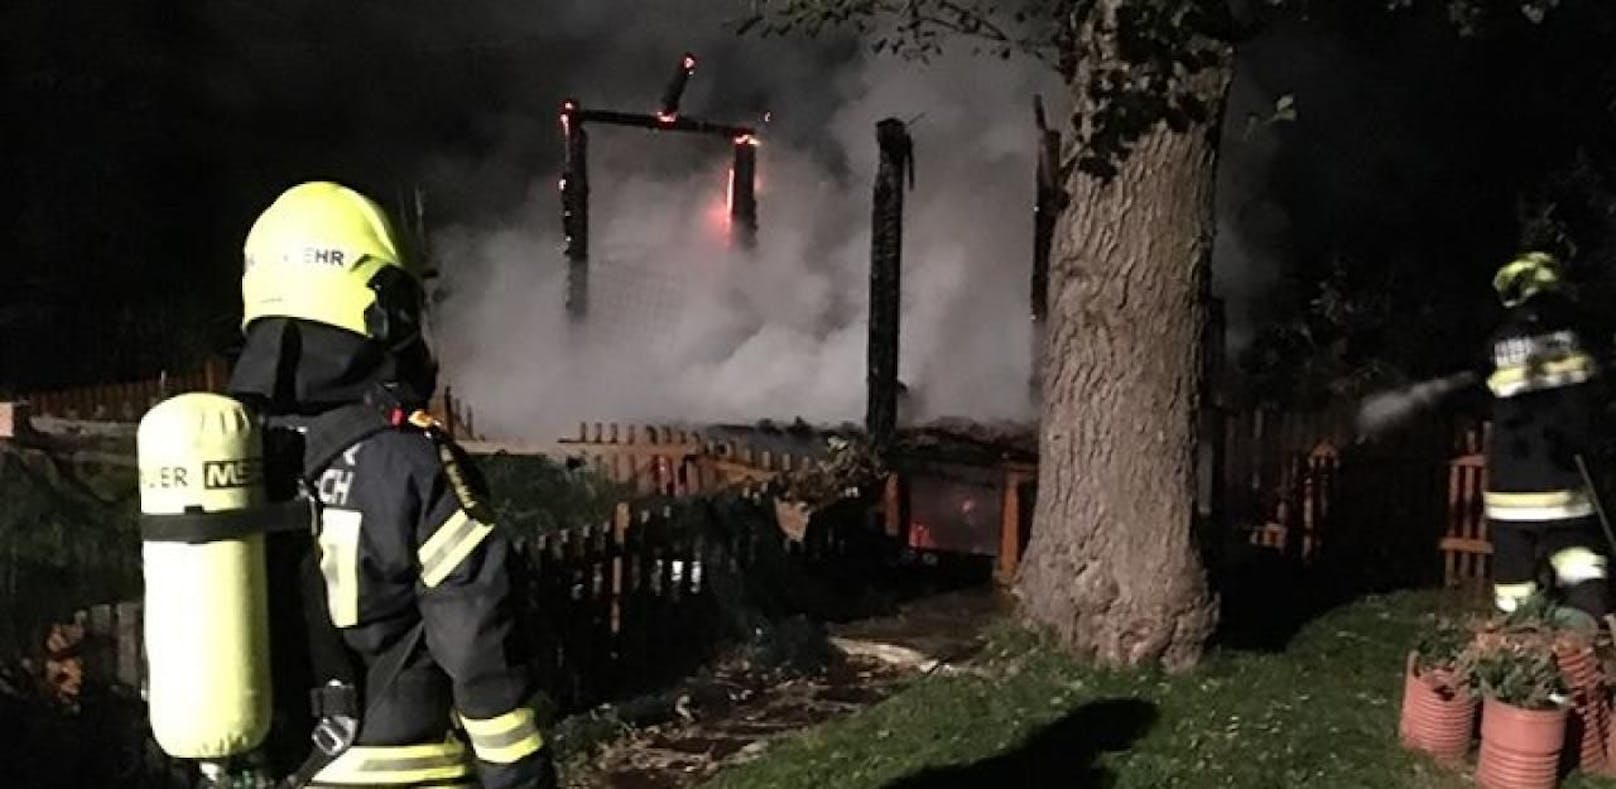 Feueralarm: Gartenhütte brannte völlig nieder